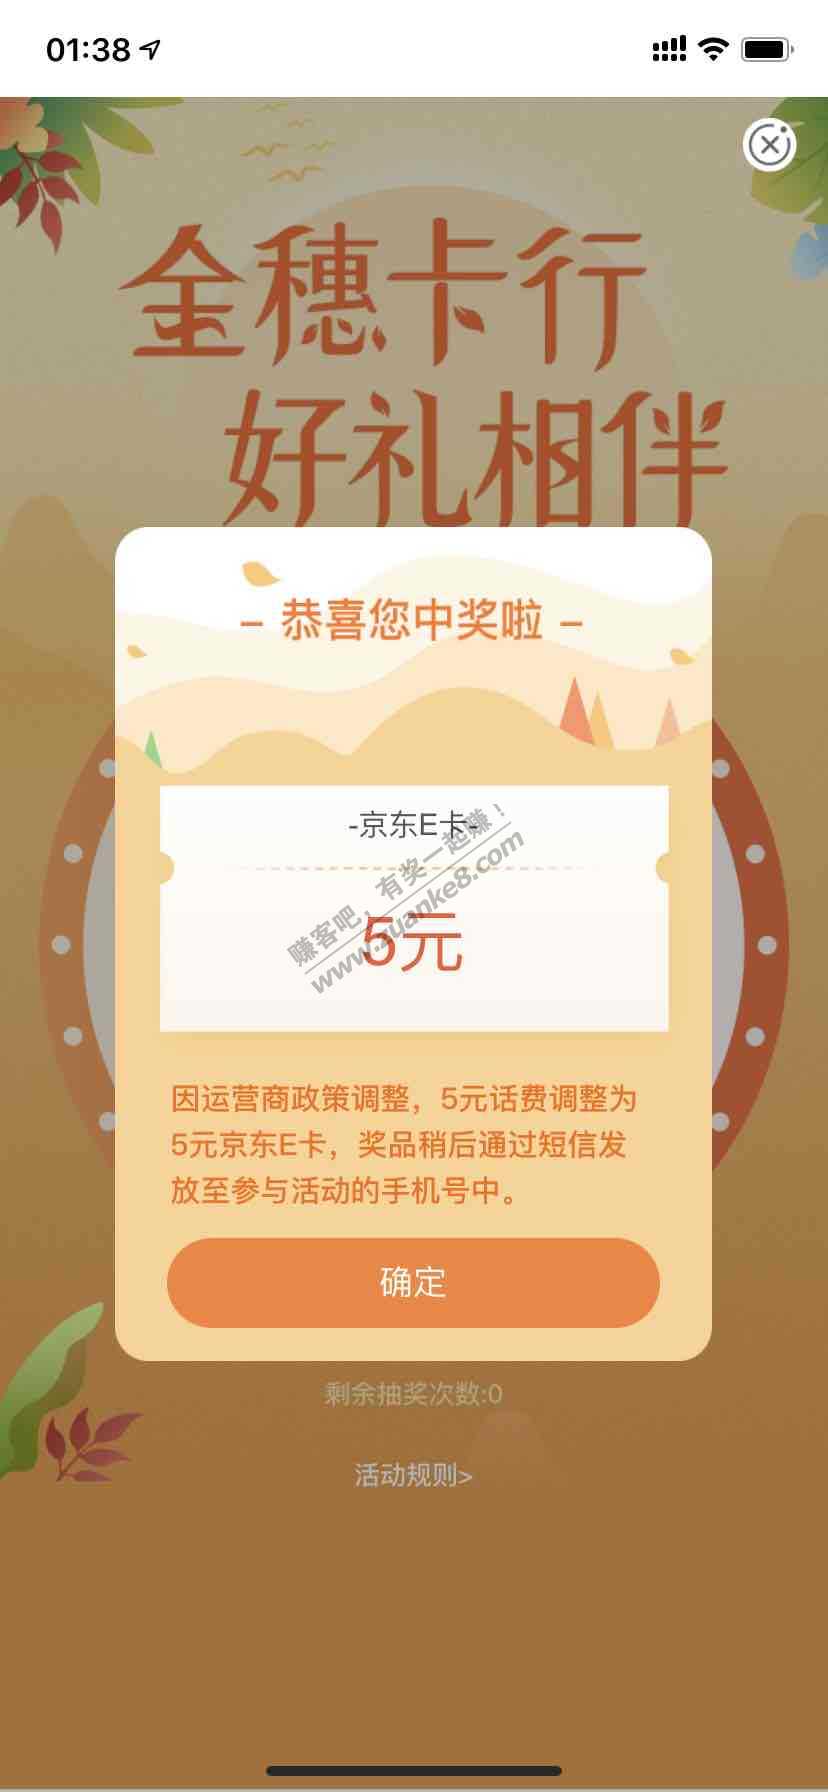 农行app 江西本地优惠 金穗卡行刚中5e卡-惠小助(52huixz.com)